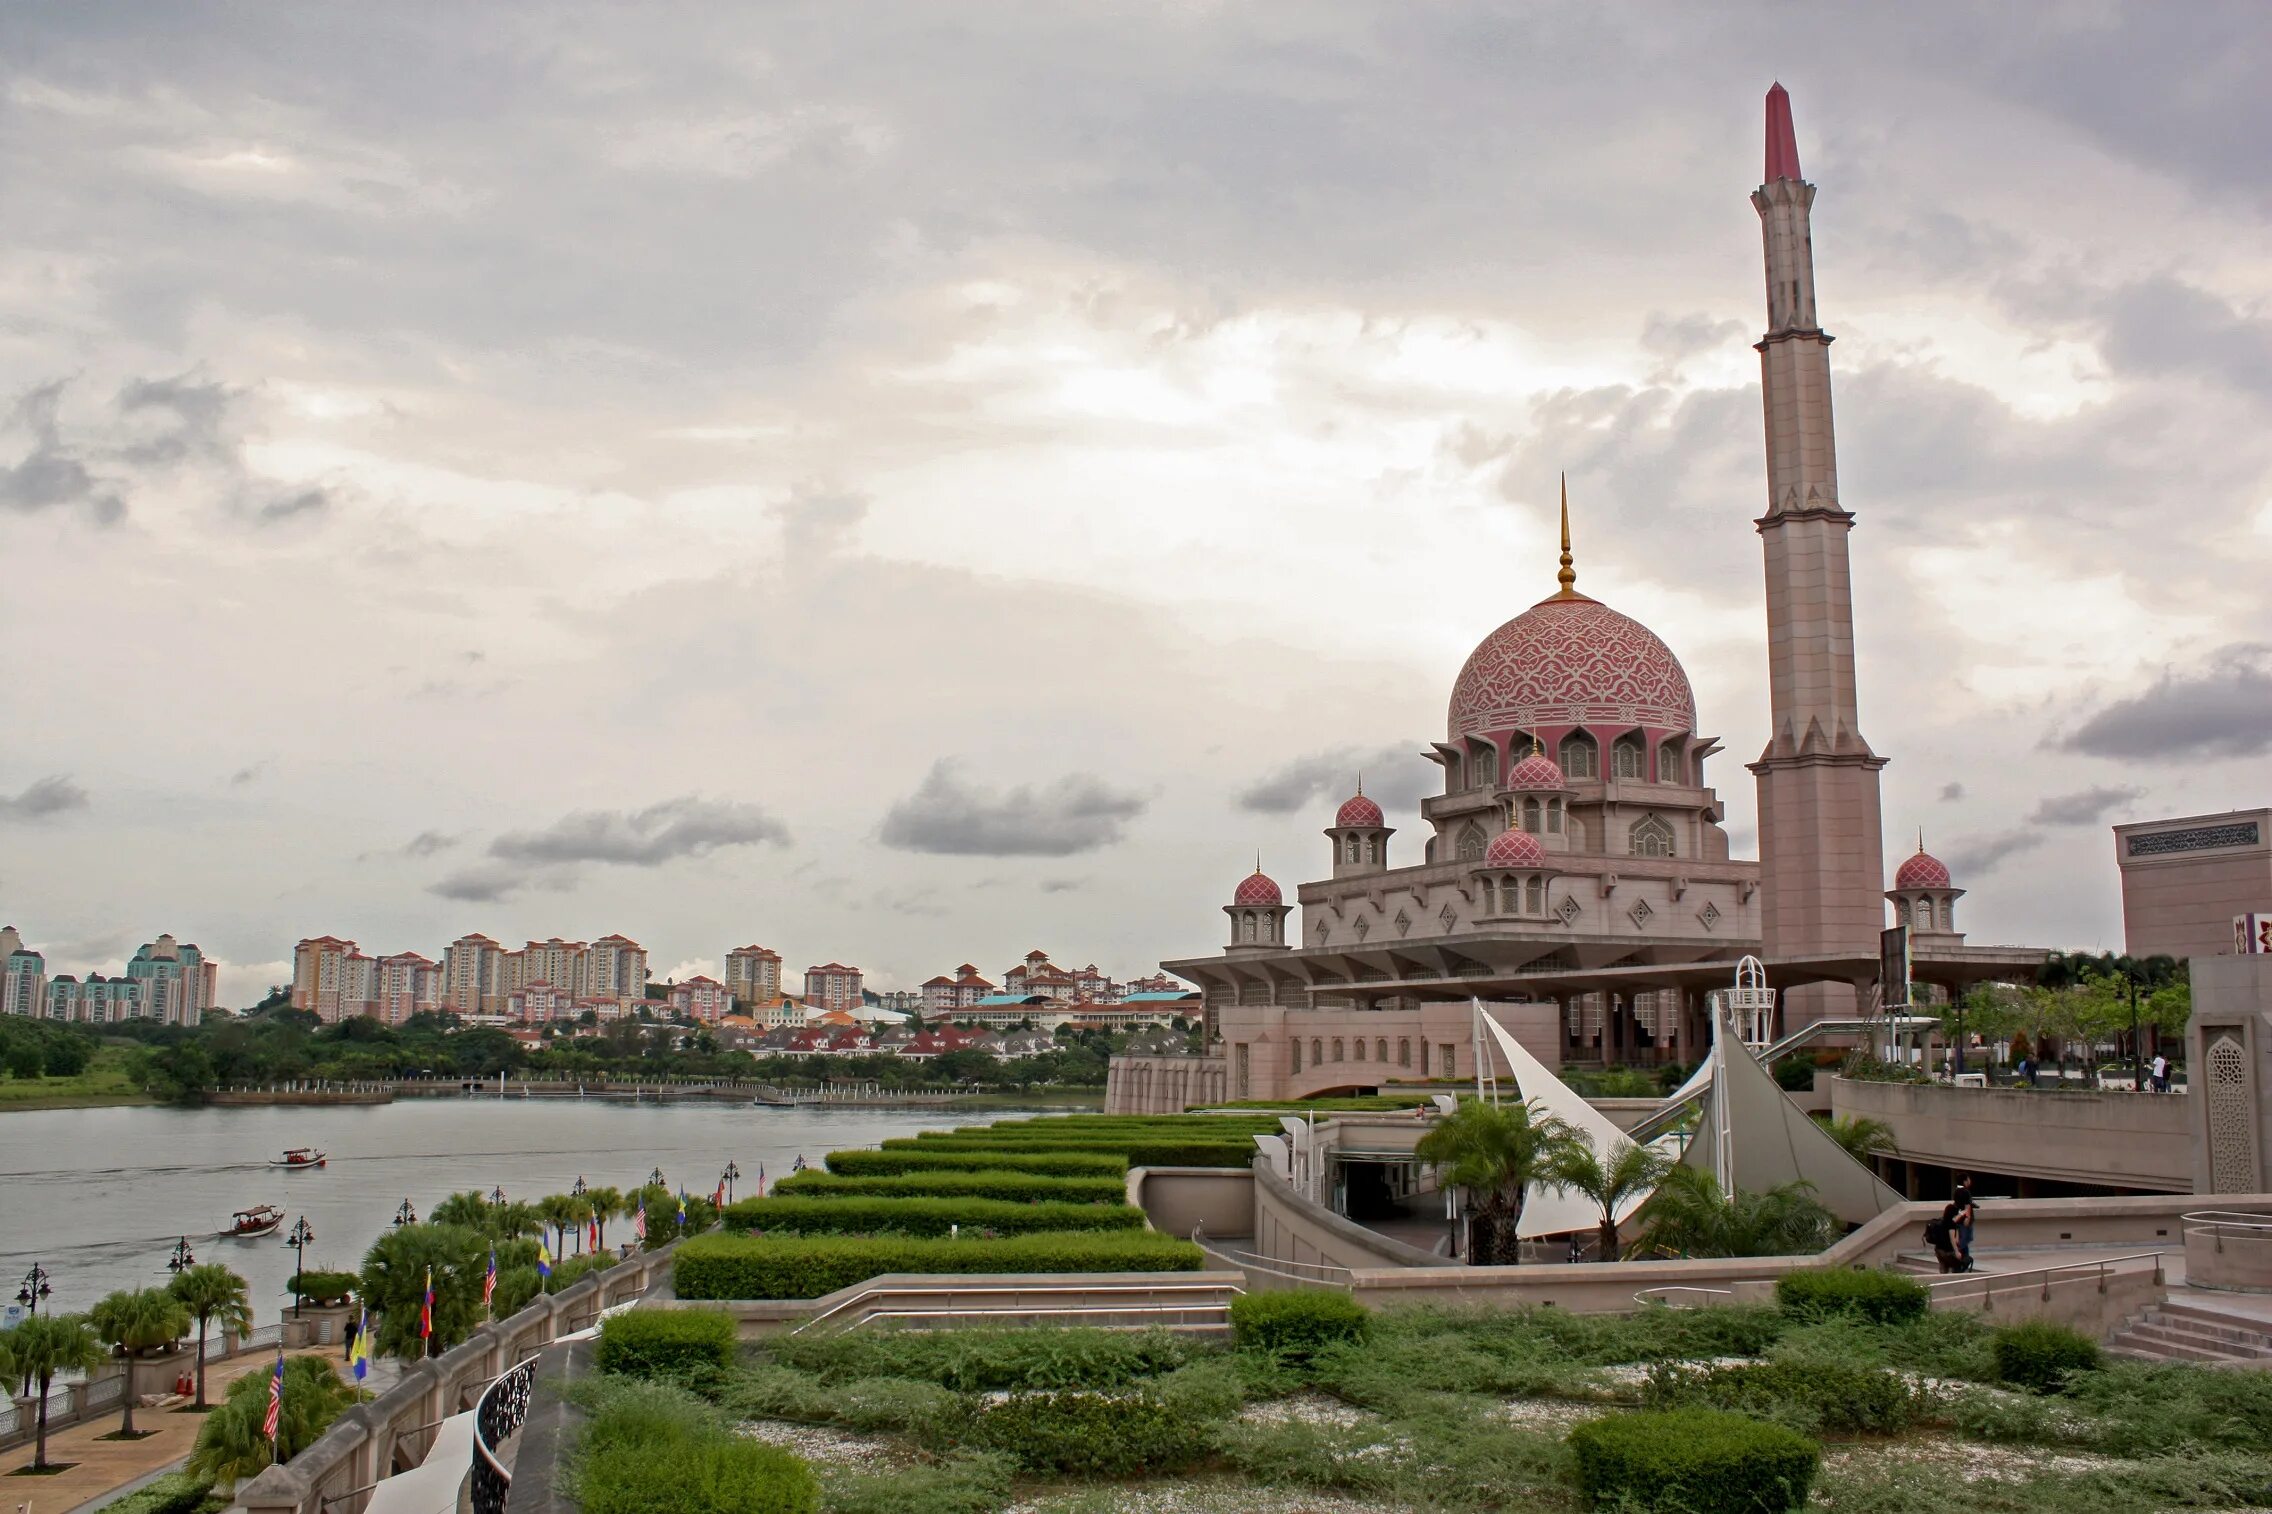 Крупные города азии. Мечеть Путра Малайзия. Путраджайя столица Малайзии. Путраджайя (Putrajaya), Малайзия. Путра — Главная мечеть Путраджая, в Малайзии..